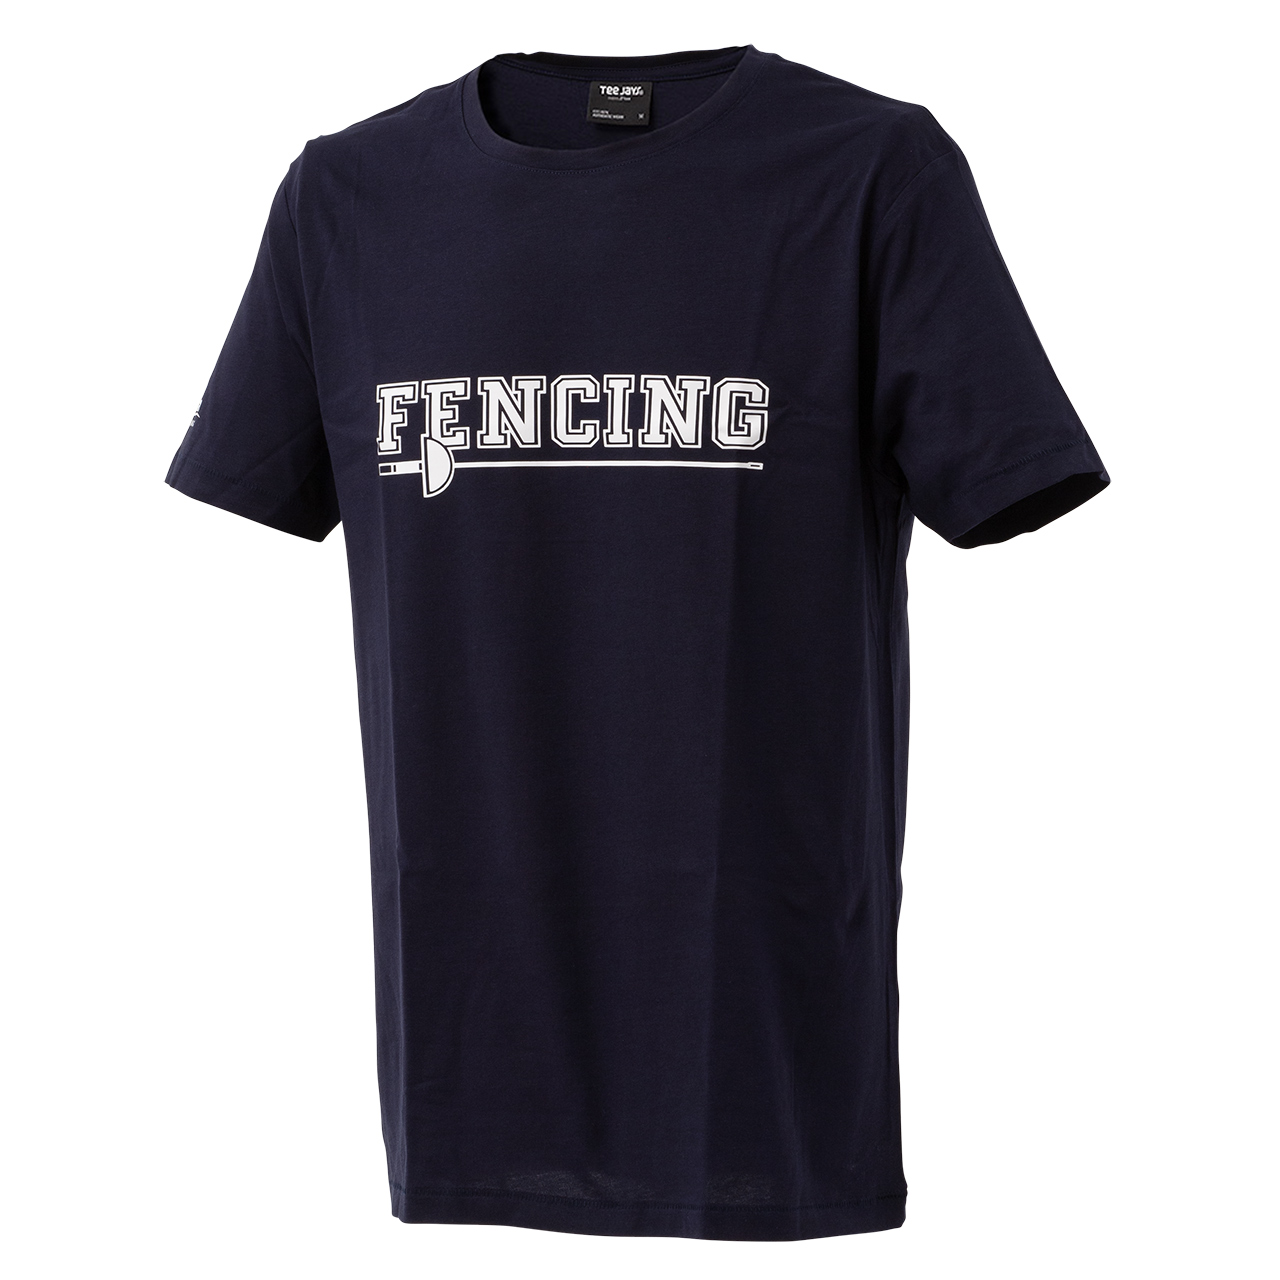 T-Shirt "Fencing", dunkelblau